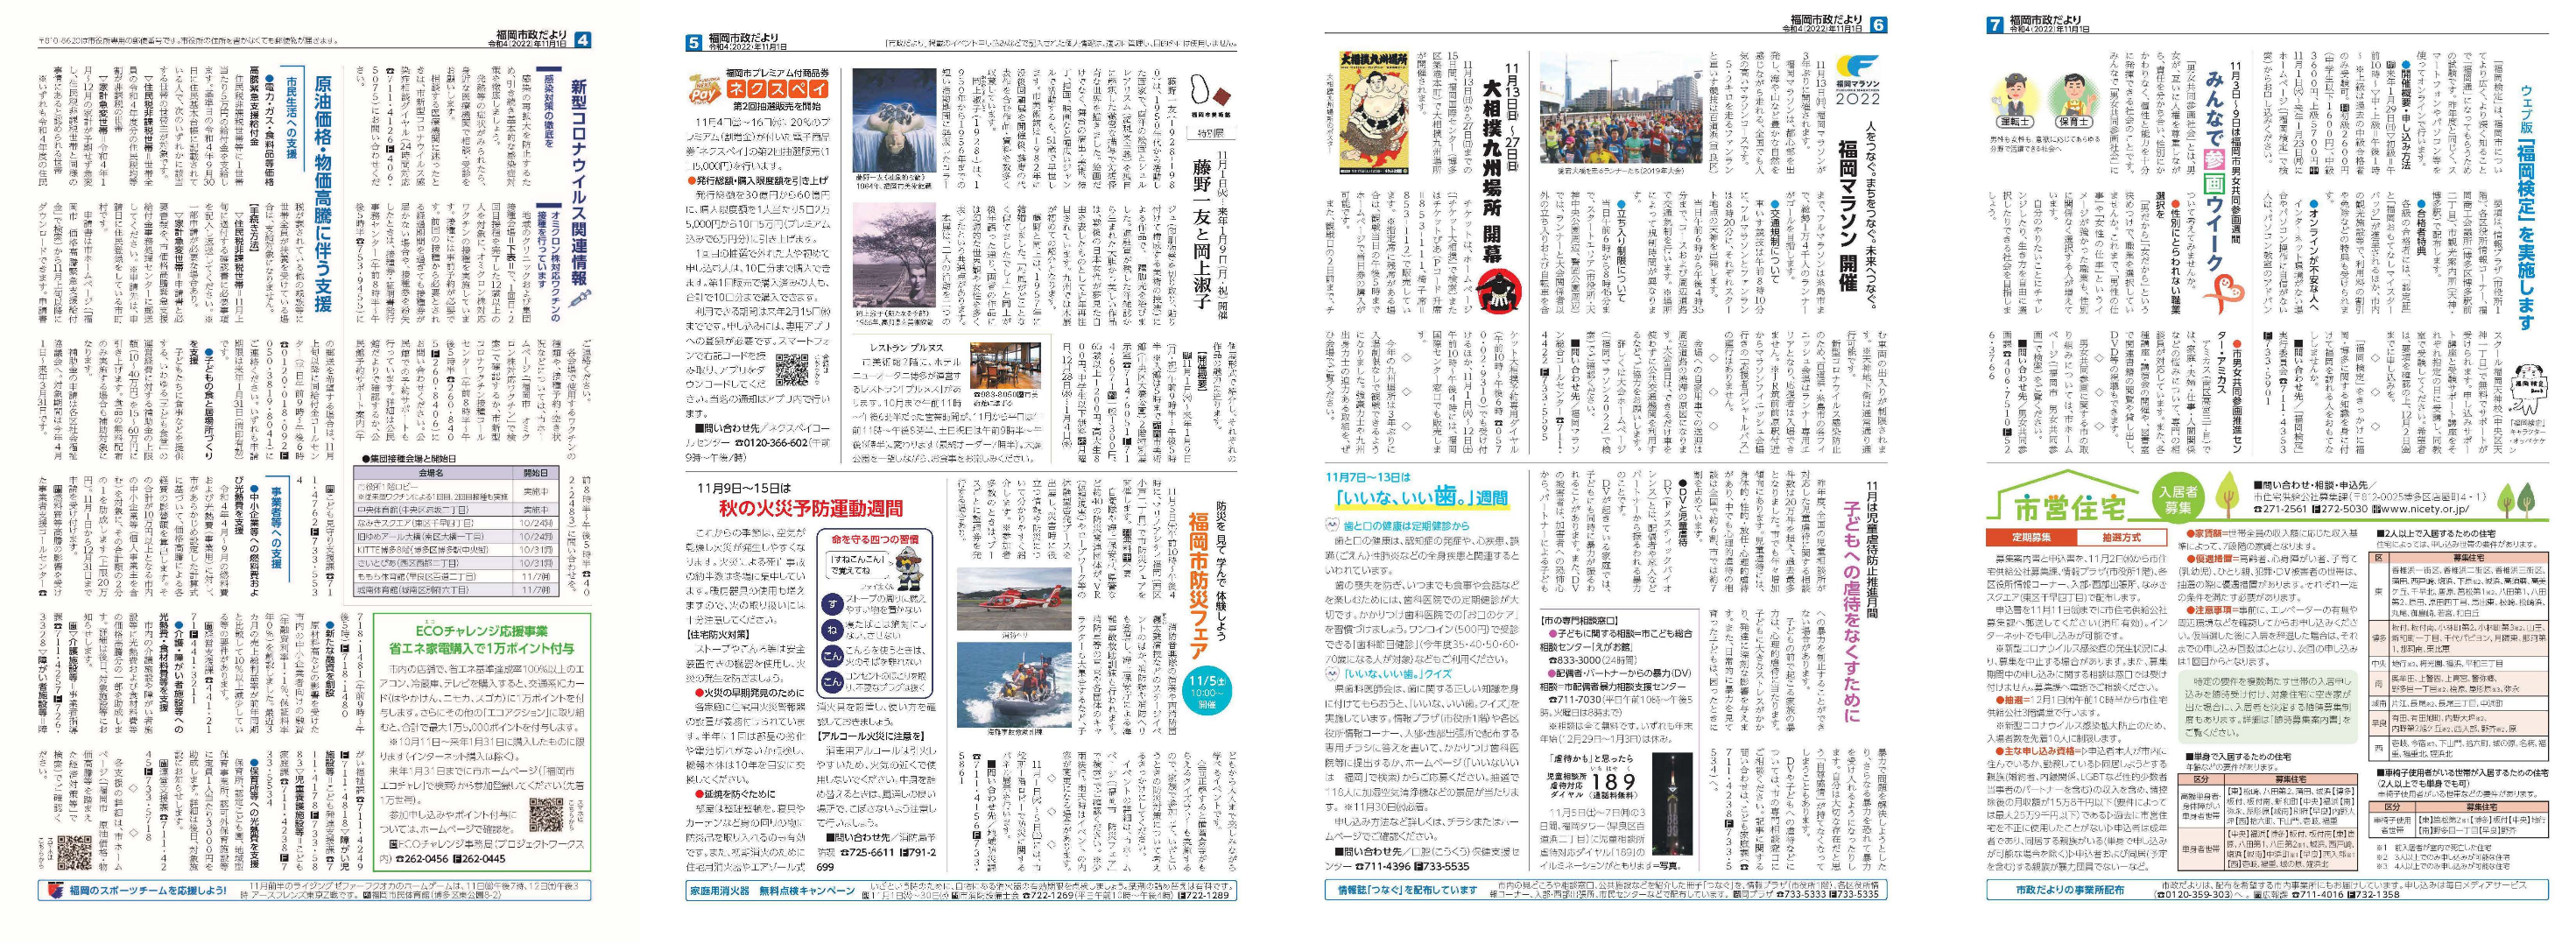 福岡市政だより2022年11月1日号の4面から7面の紙面画像